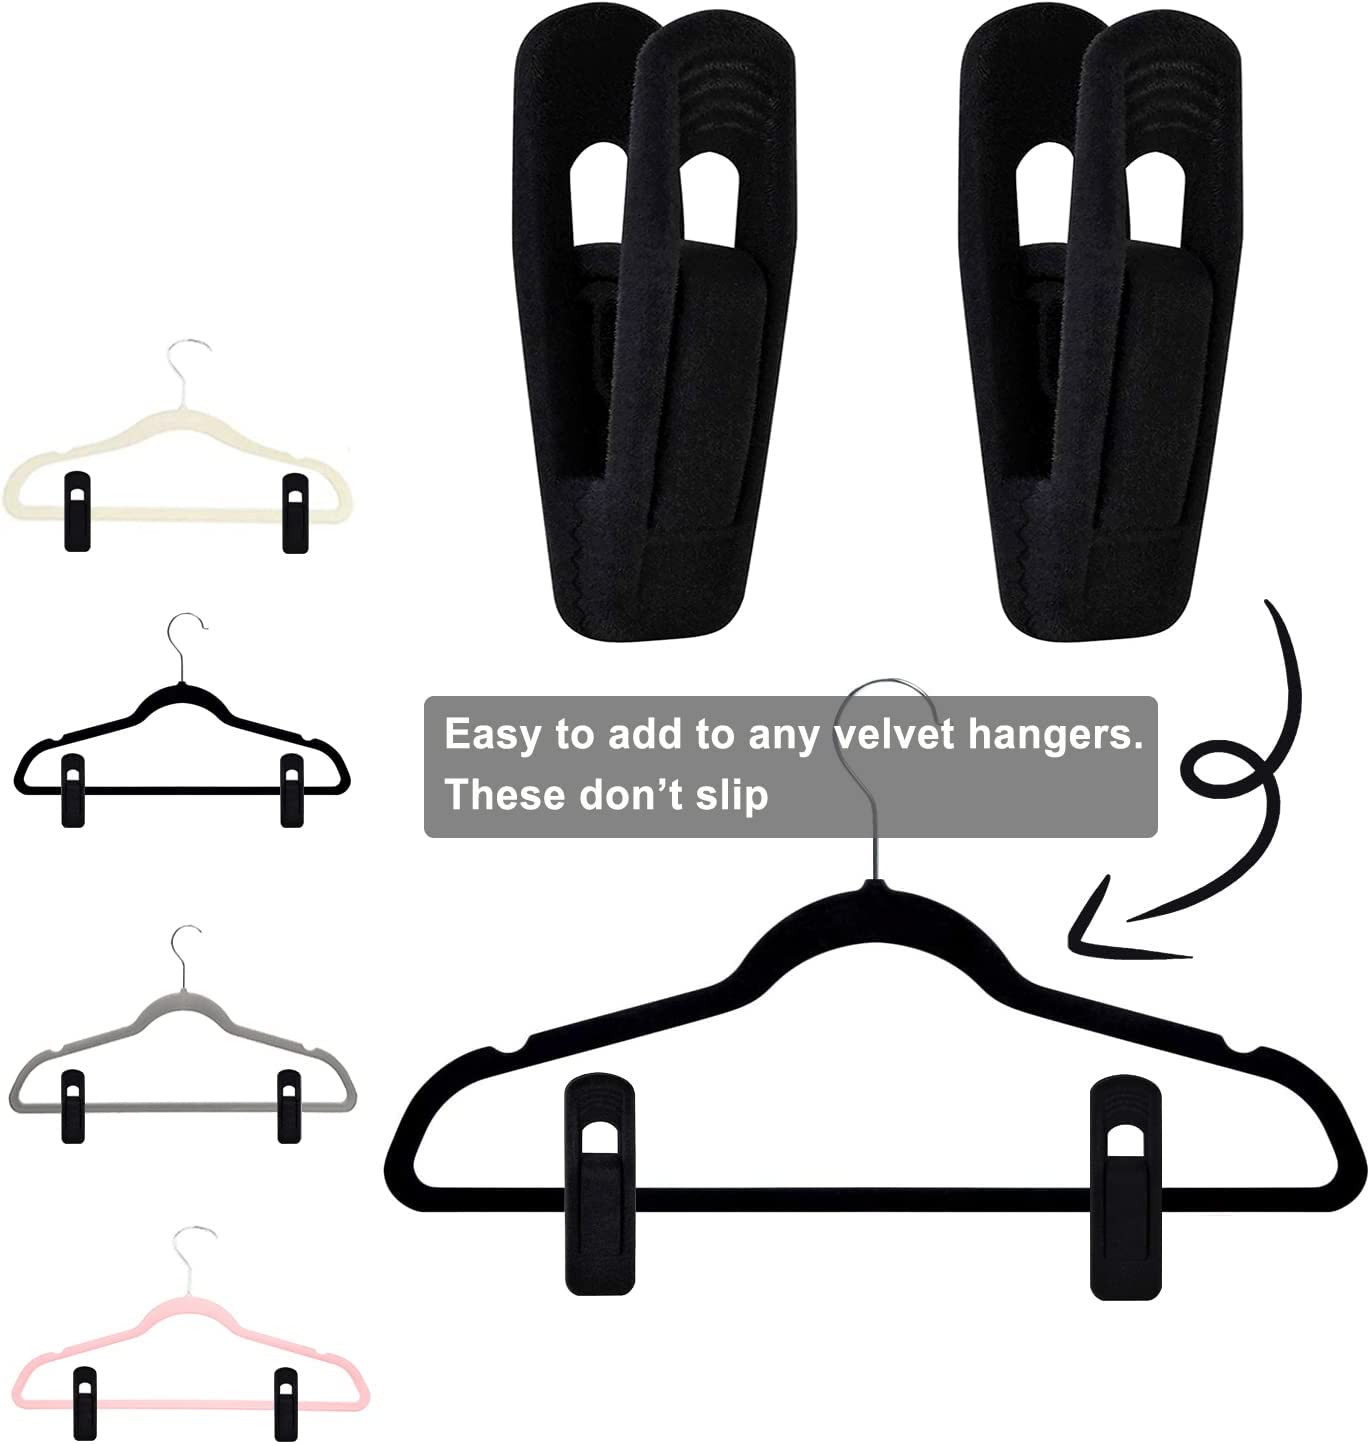 TOFIIGREM Black Velvet Hanger Clips (60-Pack), Non-Slip Strong Velvet Hangers Clips for Velvet Hangers